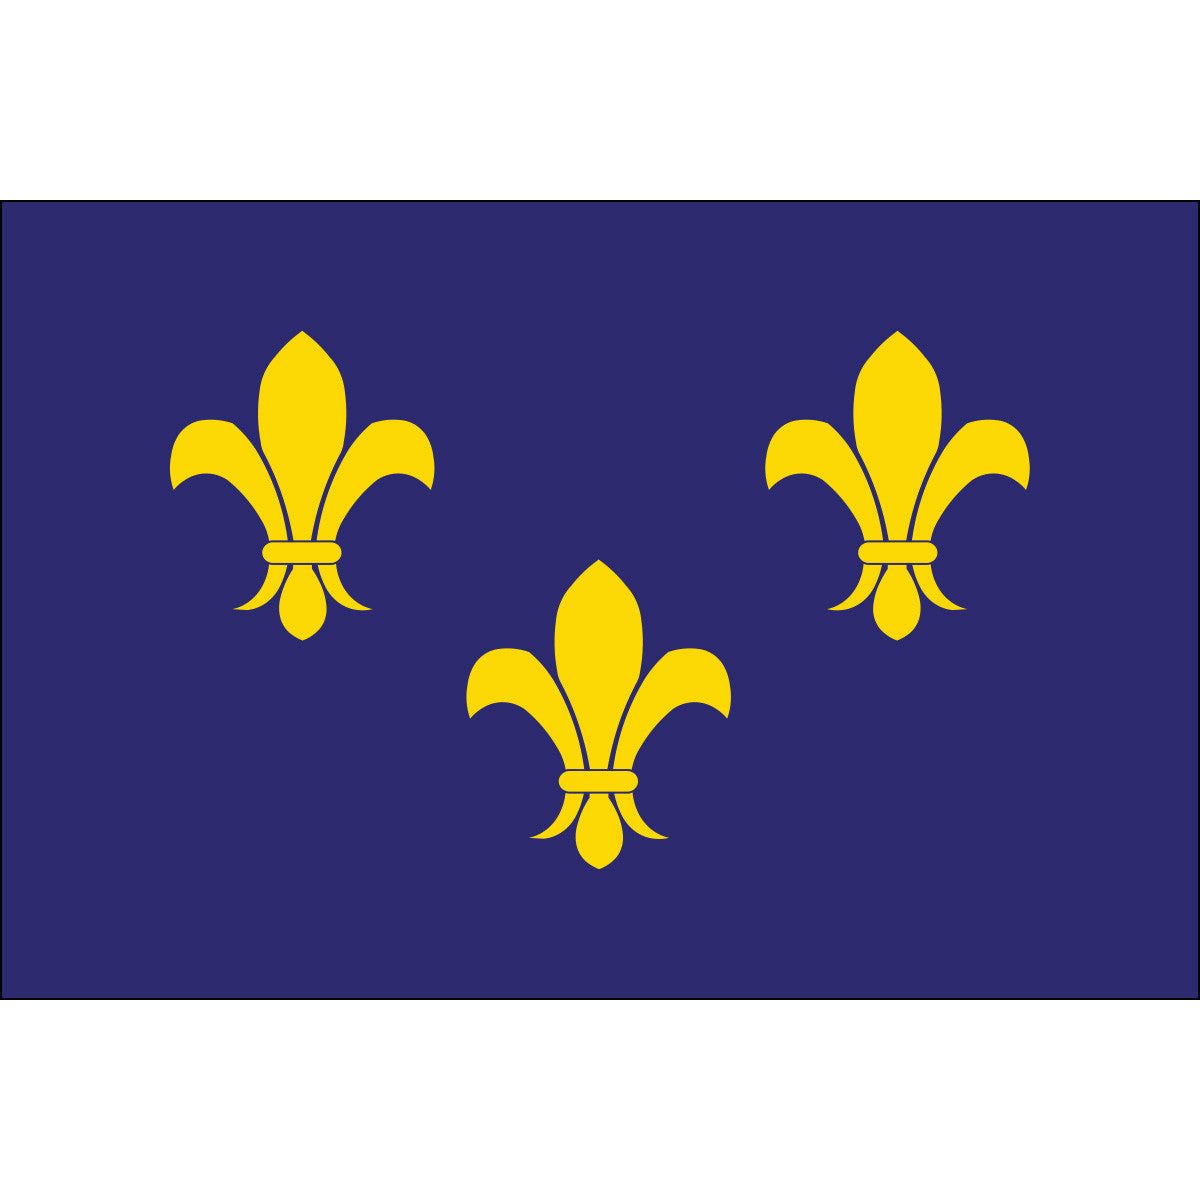 French Fleur-de-lis Flags